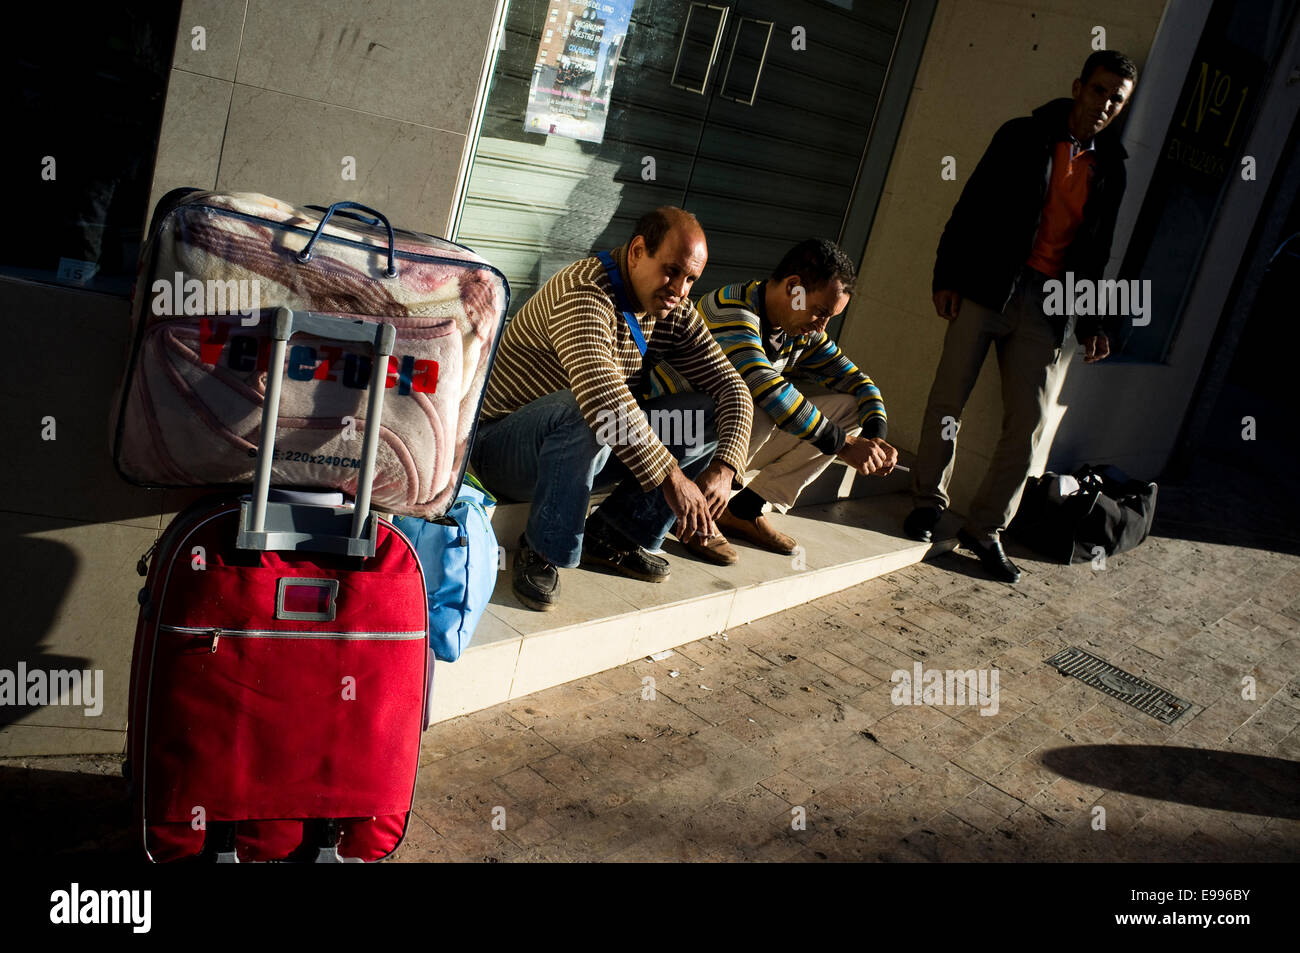 Les immigrants temporaires viennent à Valdepeñas, Ciudad Real, Espagne, de travailler en vendanges. Ils vivent dans de mauvaises conditions et rendez-co Banque D'Images